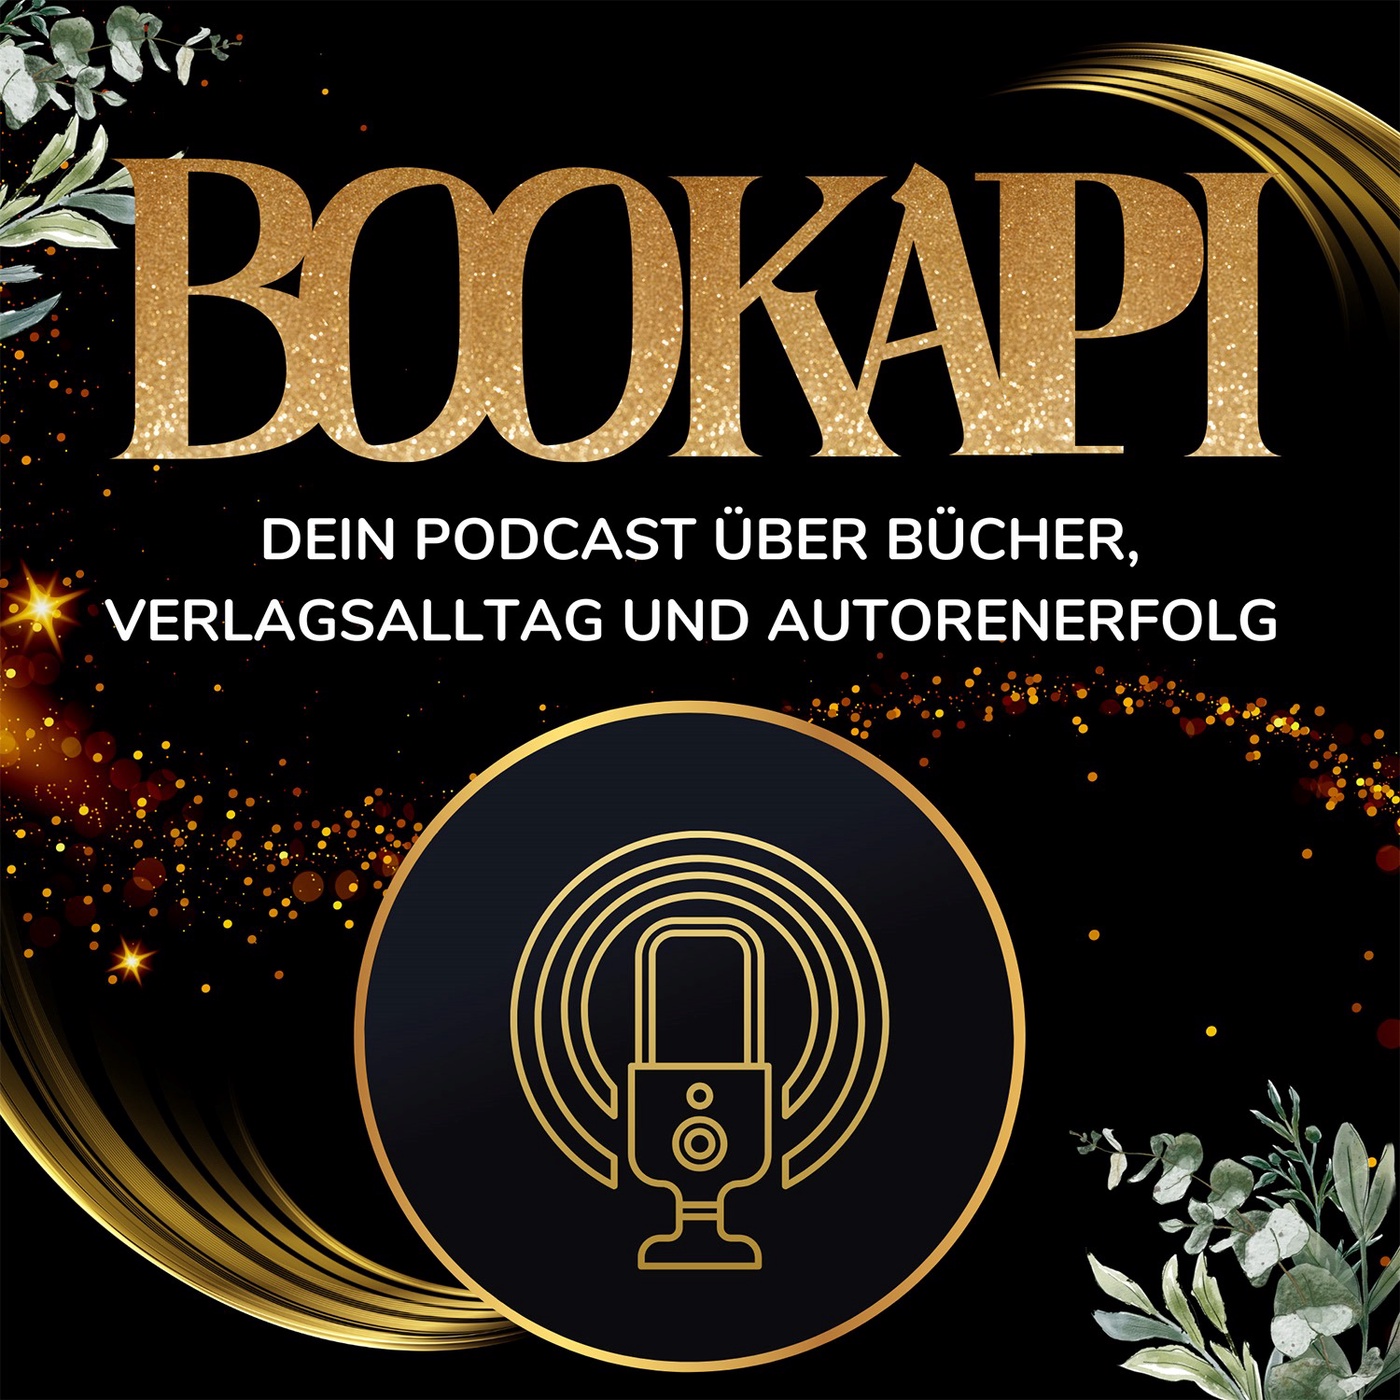 BOOKAPI - Dein Podcast über Bücher, Verlagsalltag und Autorenerfolg